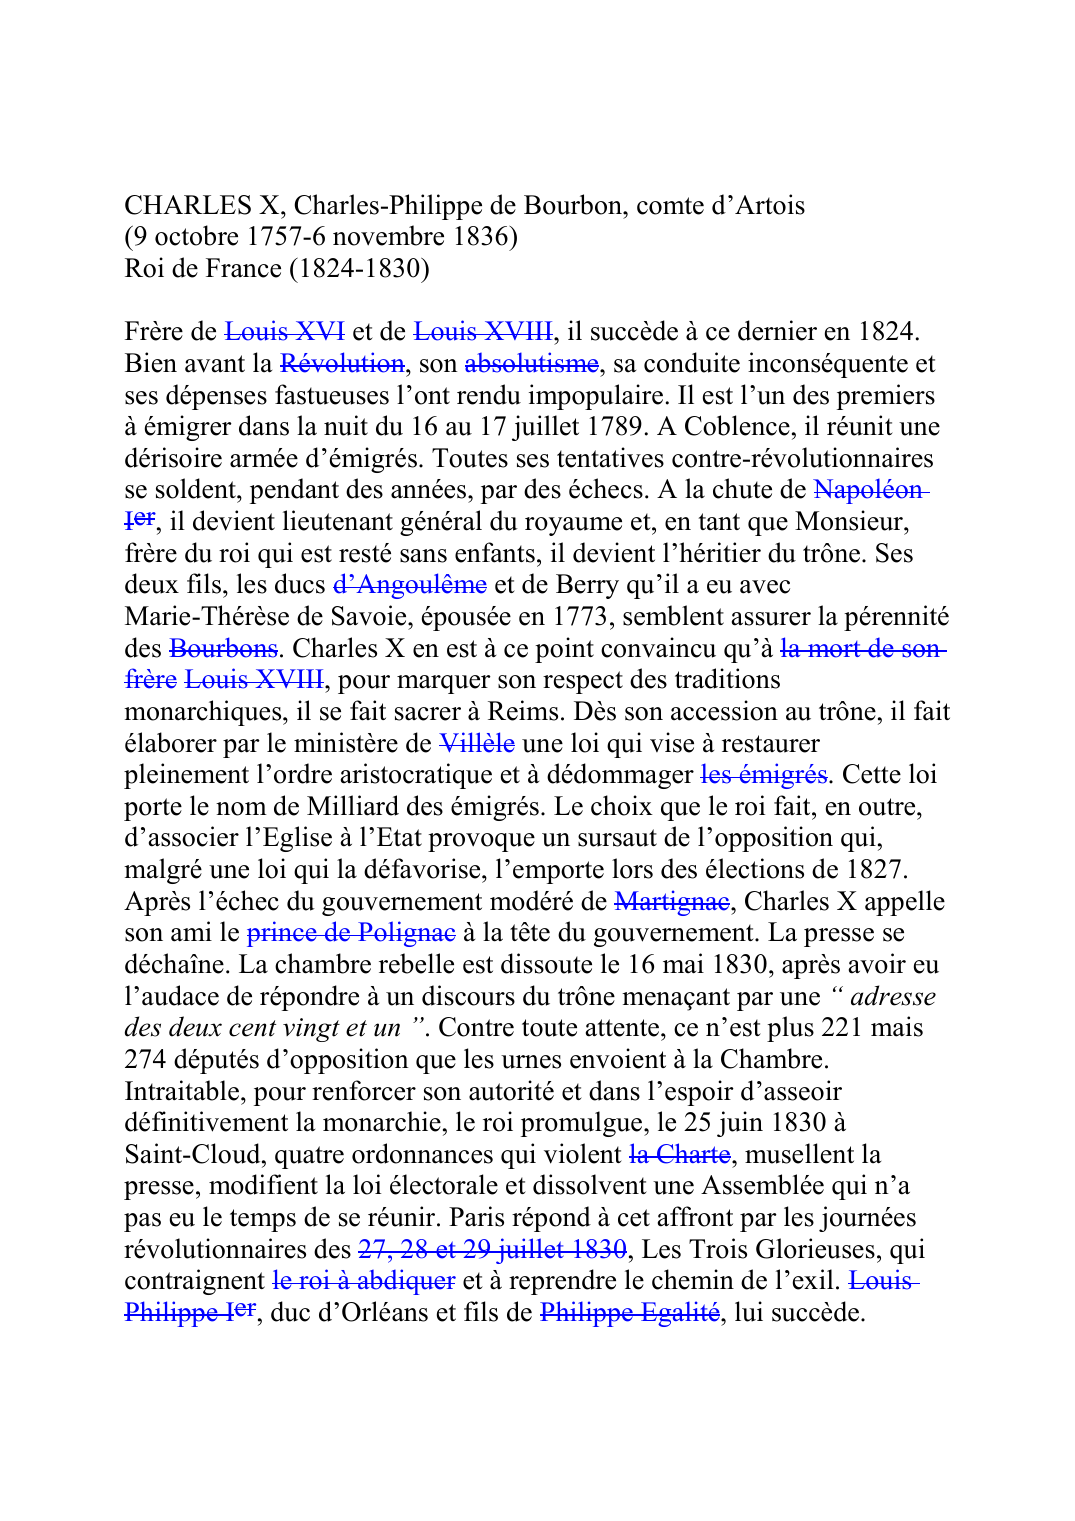 Prévisualisation du document CHARLES X, Charles-Philippe de Bourbon, comte d'Artois (9 octobre 1757-6 novembre 1836) Roi de France (1824-1830)  Frère de Louis XVIF202 et de Louis XVIIIF208, il succède à ce dernier en 1824.